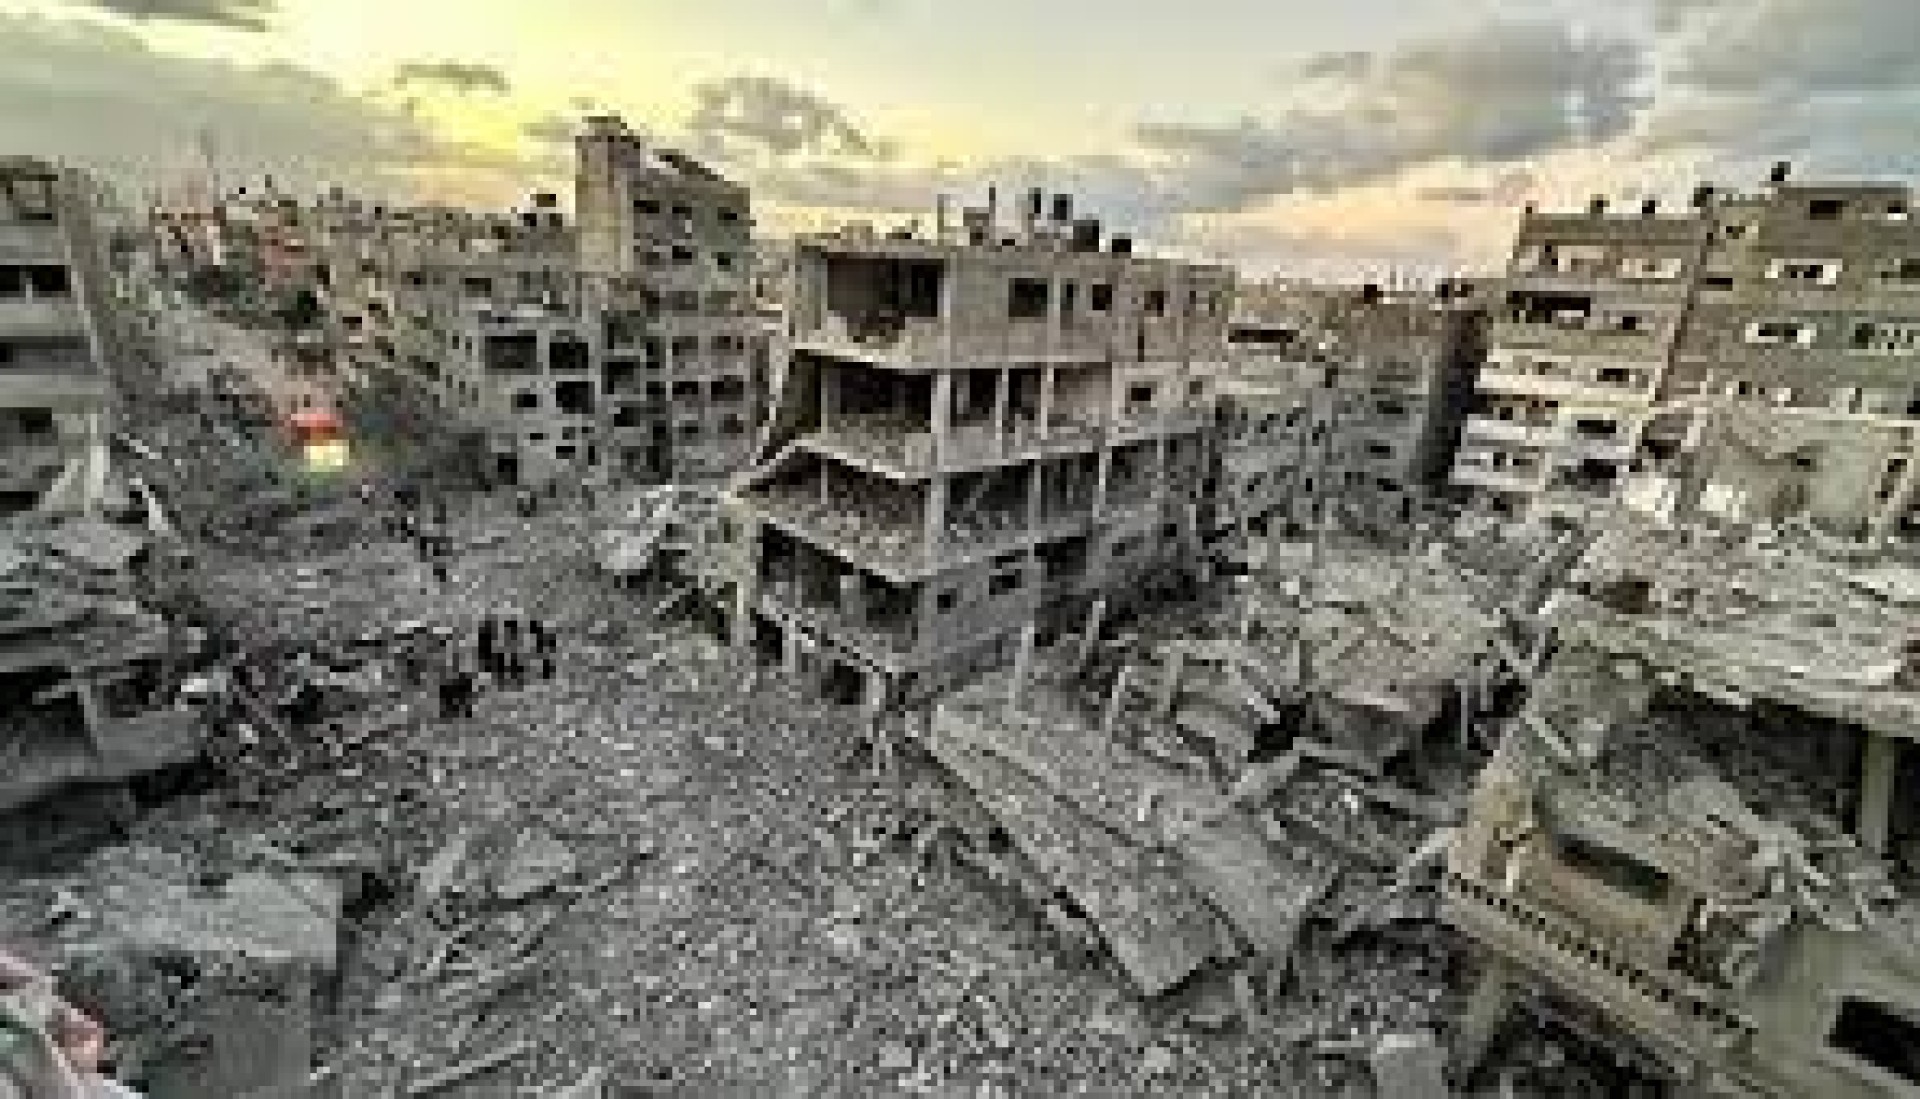 Quella Zone of Interest a un passo da Gaza. Il regresso che si oppone al progresso. Una recensione di Flavia Salierno (CPdR)